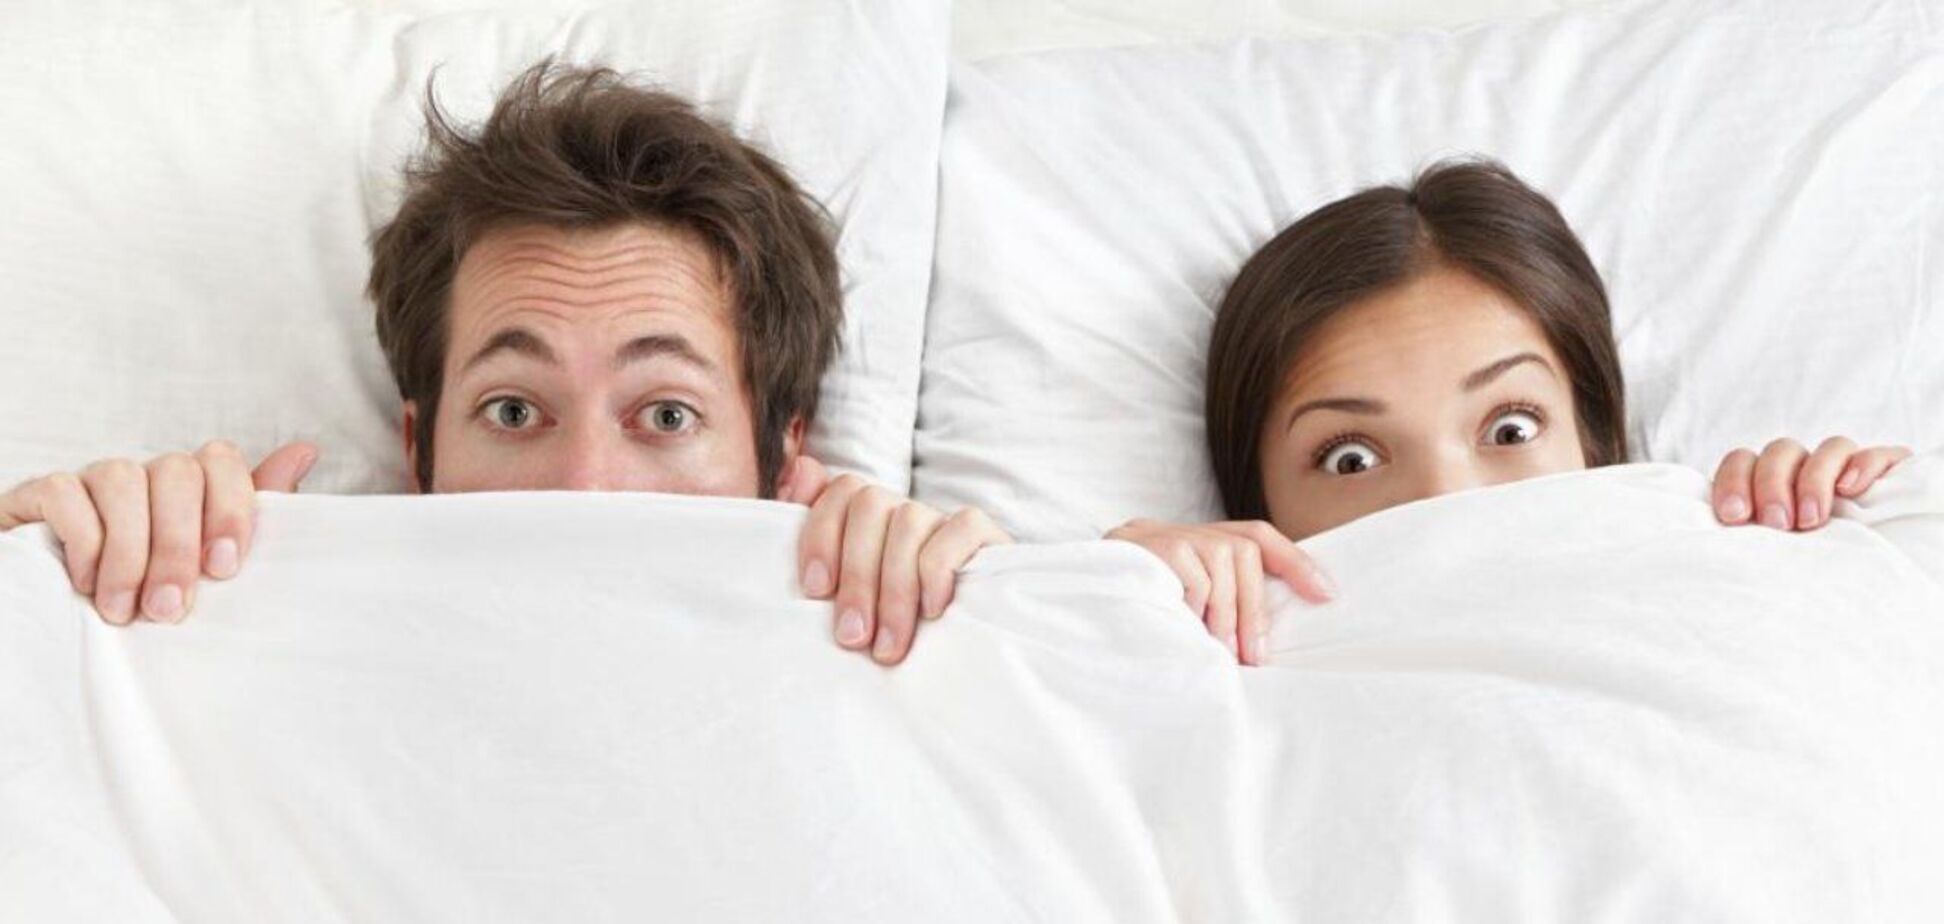 Гола правда: 7 фактів про те, що спати без одягу корисно для здоров'я